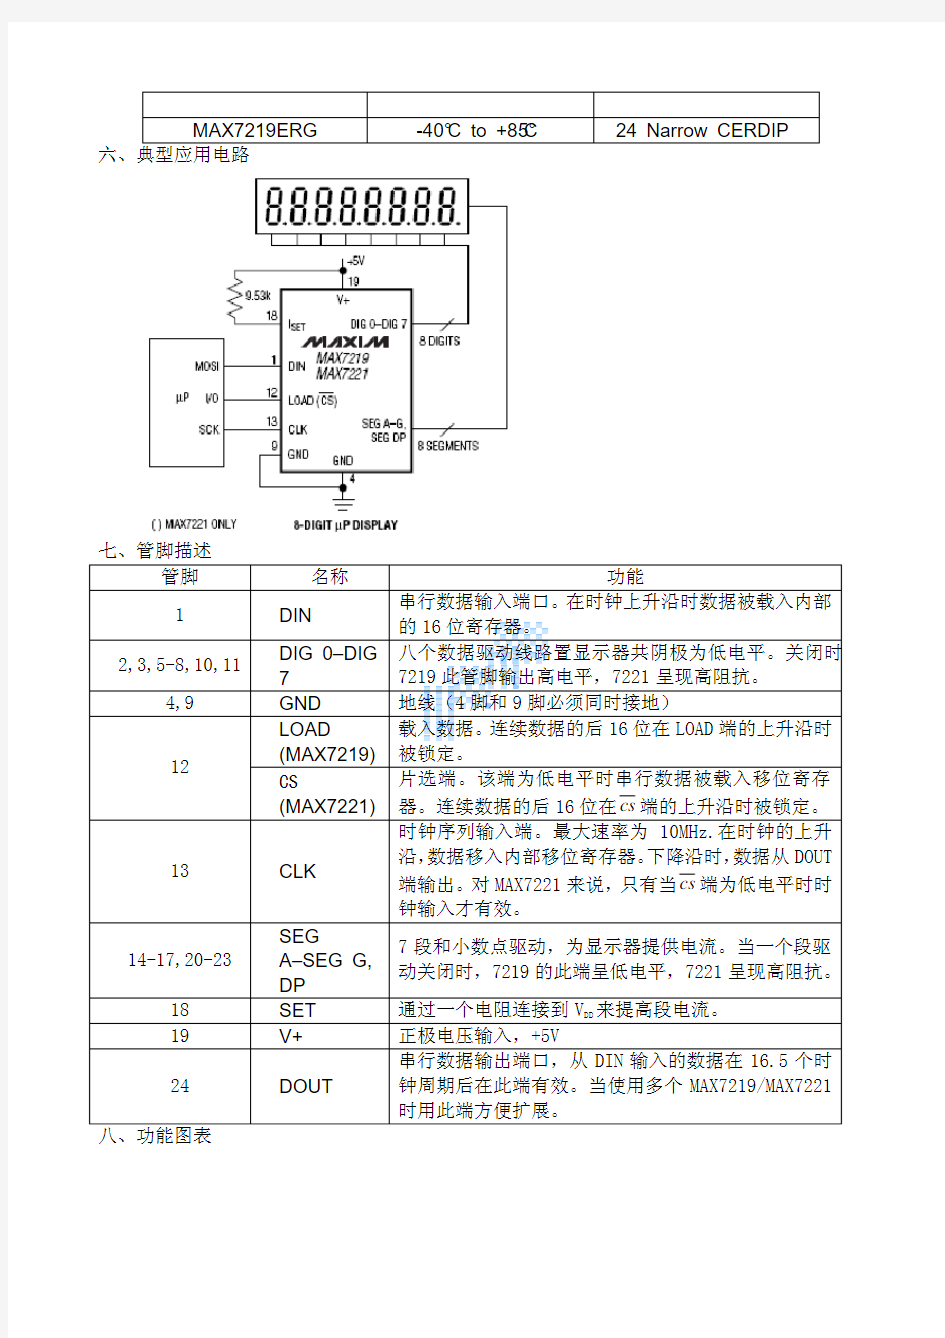 Max7219 LED显示驱动器中文资料